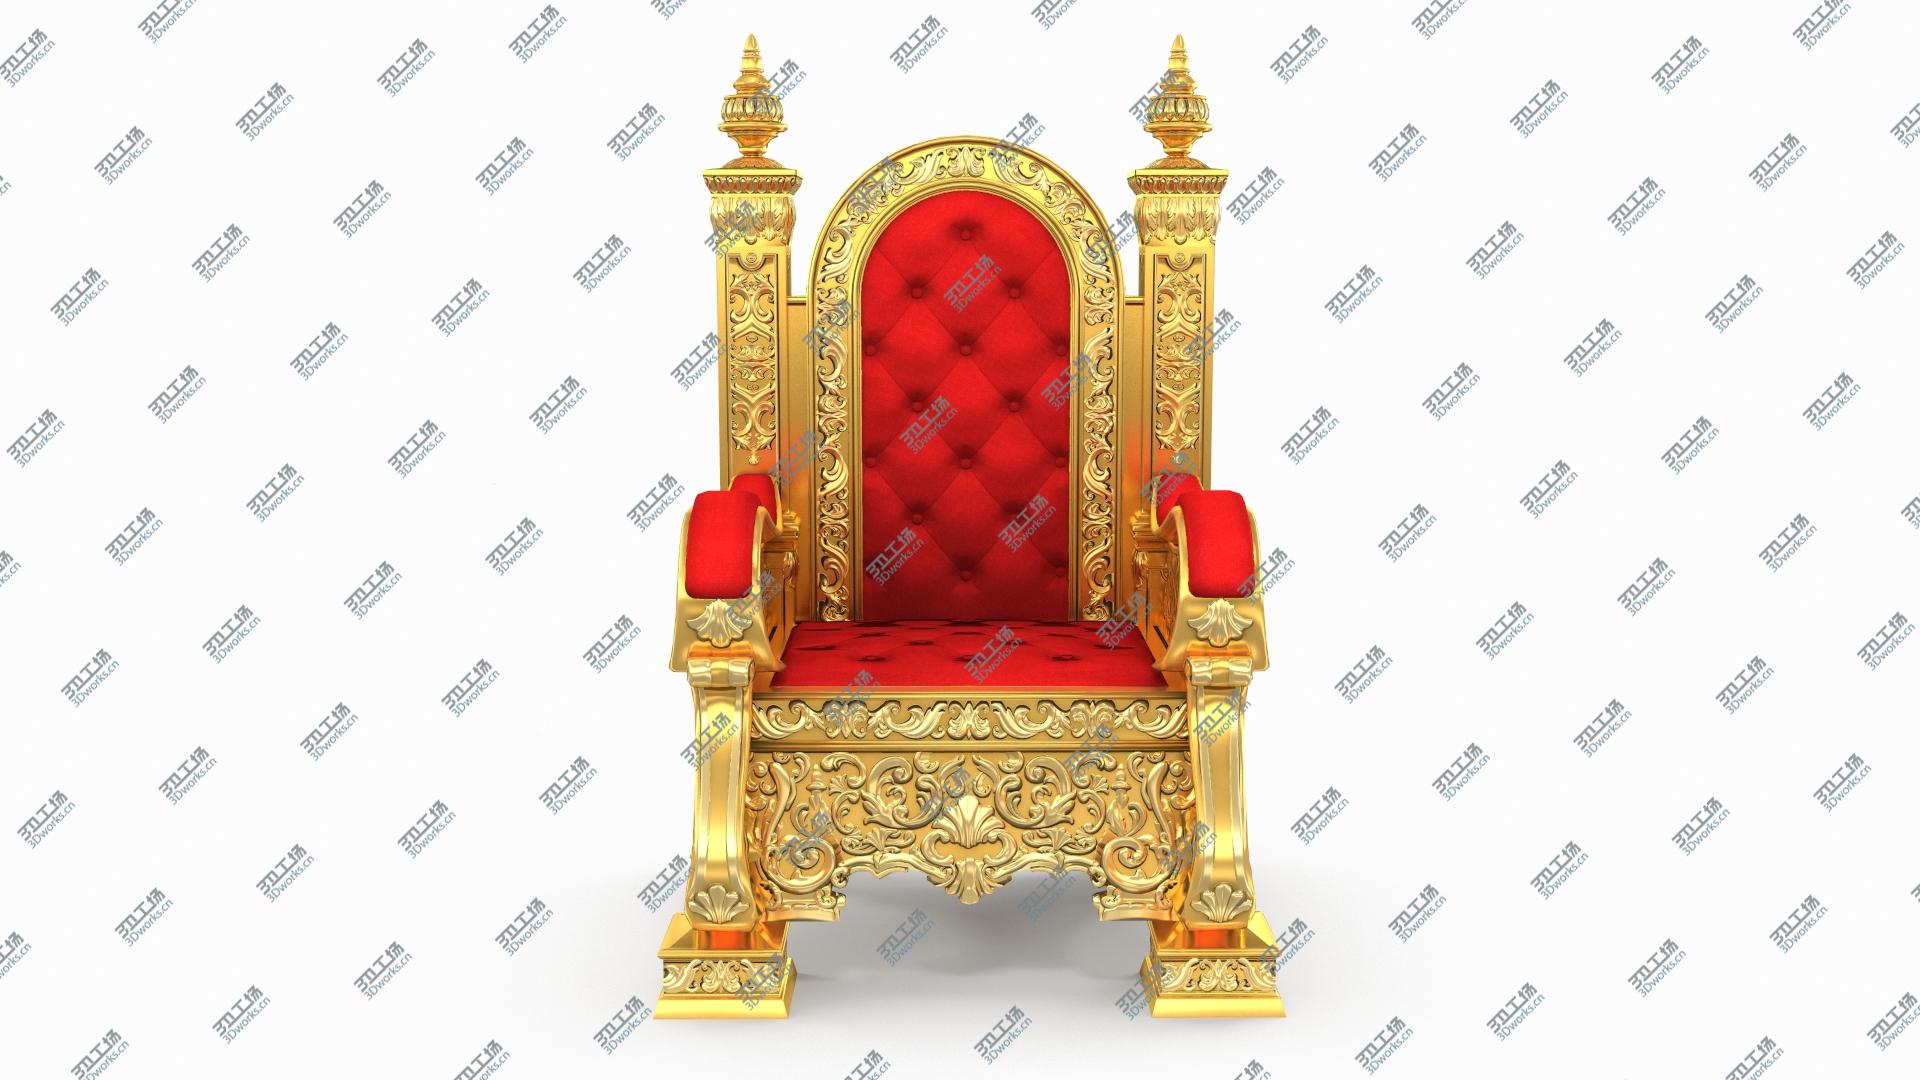 images/goods_img/2021040162/3D Kings Throne Chair model/3.jpg